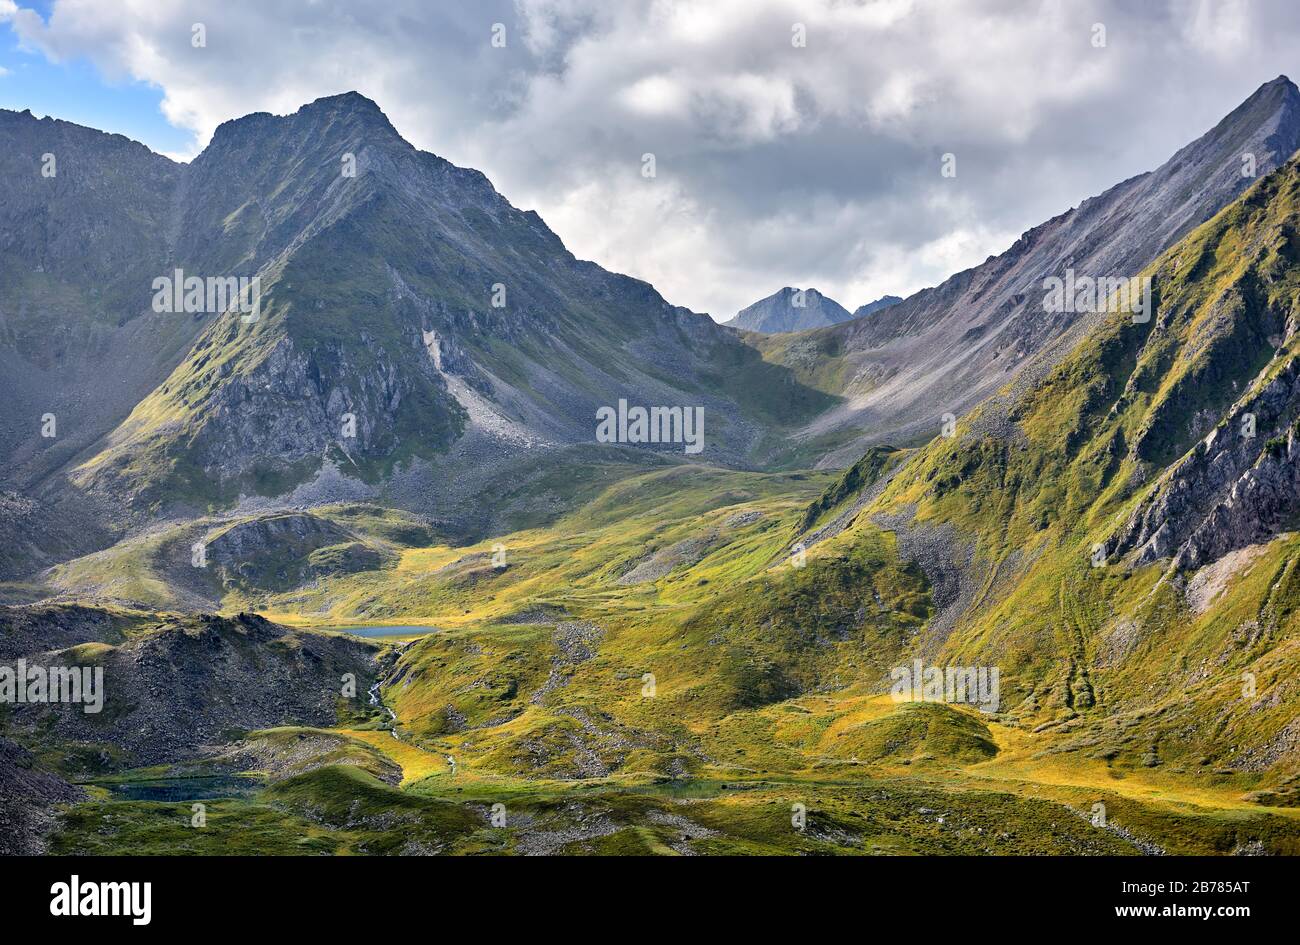 Tundra alpina e laghi in testa al fiume Siberiano. La parte alta della valle è di origine glaciale. La luce solare illumina le aree selezionate di Foto Stock